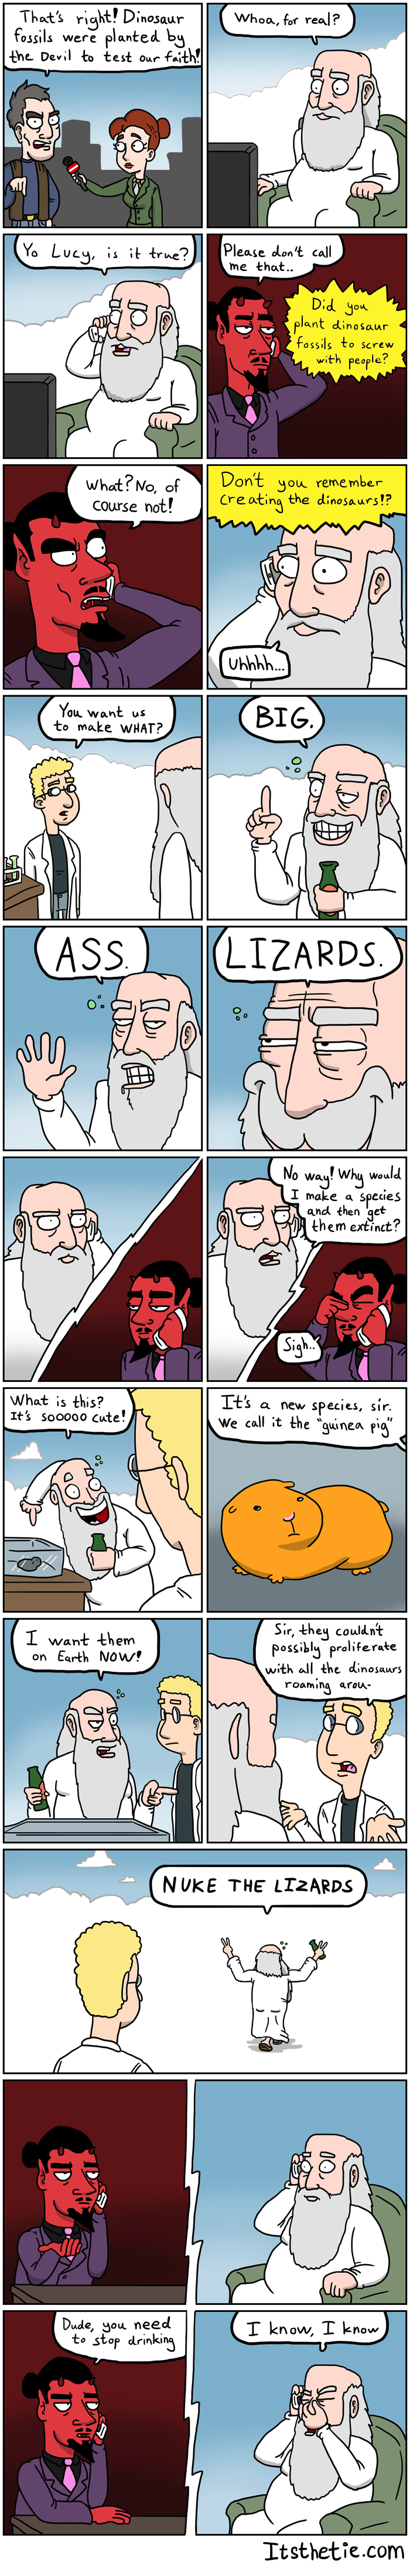 God vs. Satan - Fossils